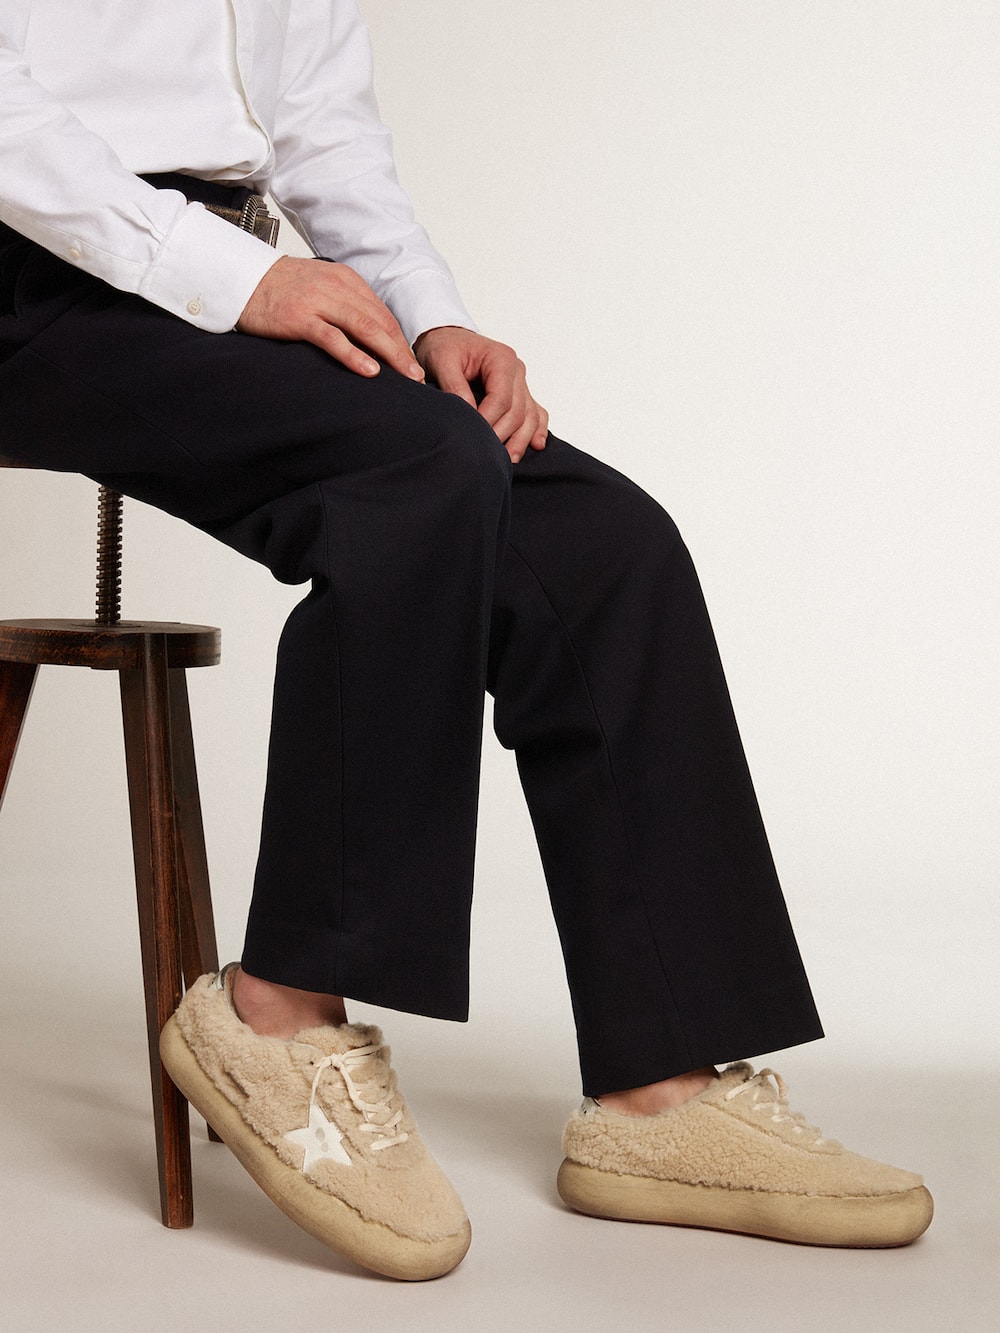 Golden Goose - Zapatos Ball Star para hombre de shearling beige con estrella de piel blanca y refuerzo del talón de piel laminada in 